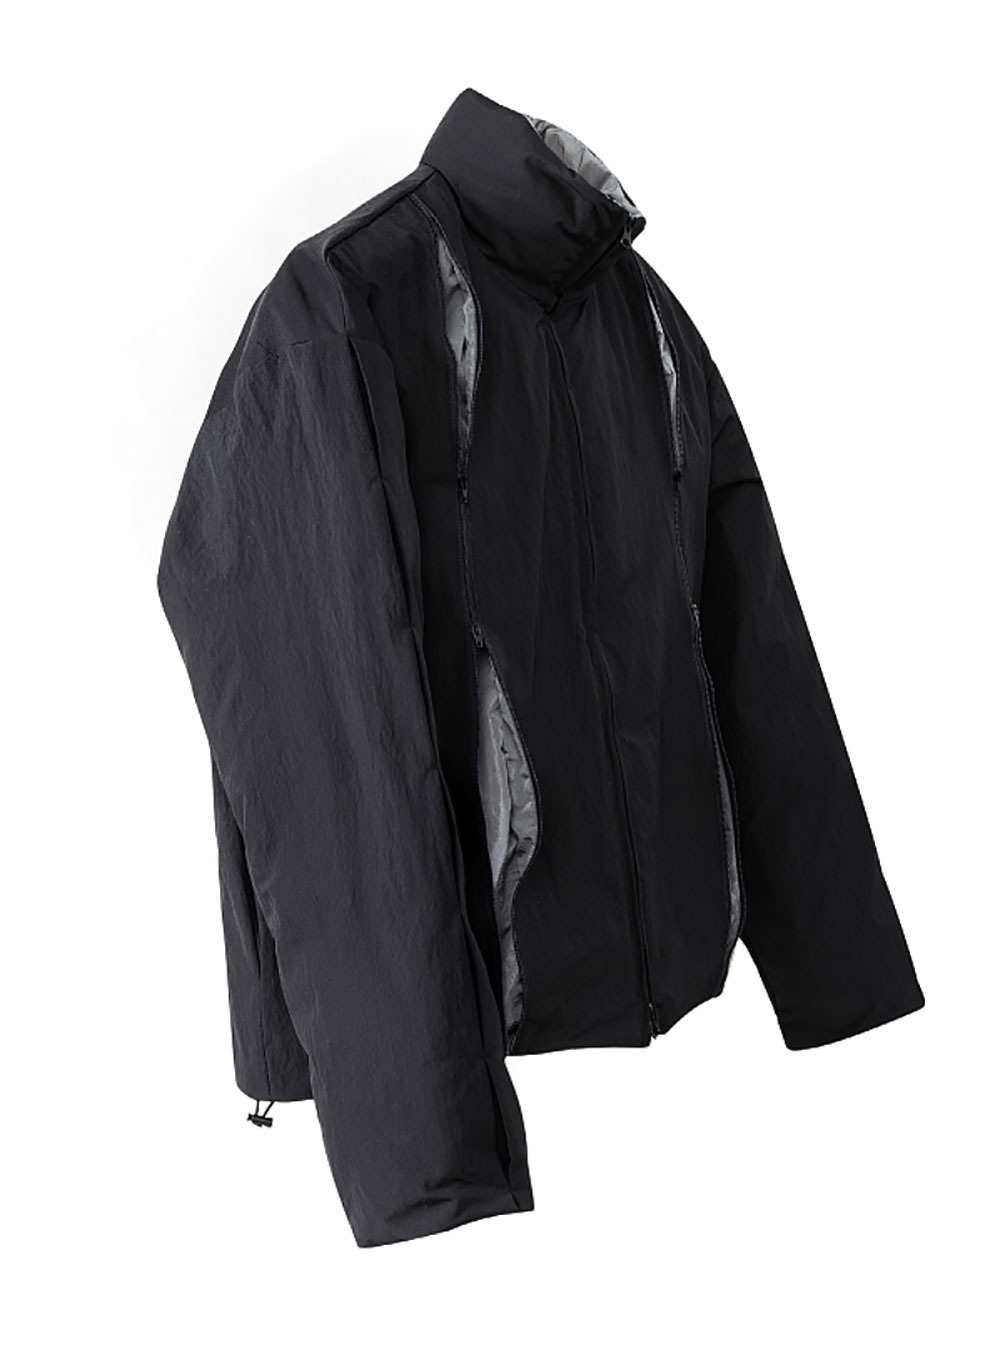 [OCEANBACCA] Pleats Color Matching Black Cotton Jacket